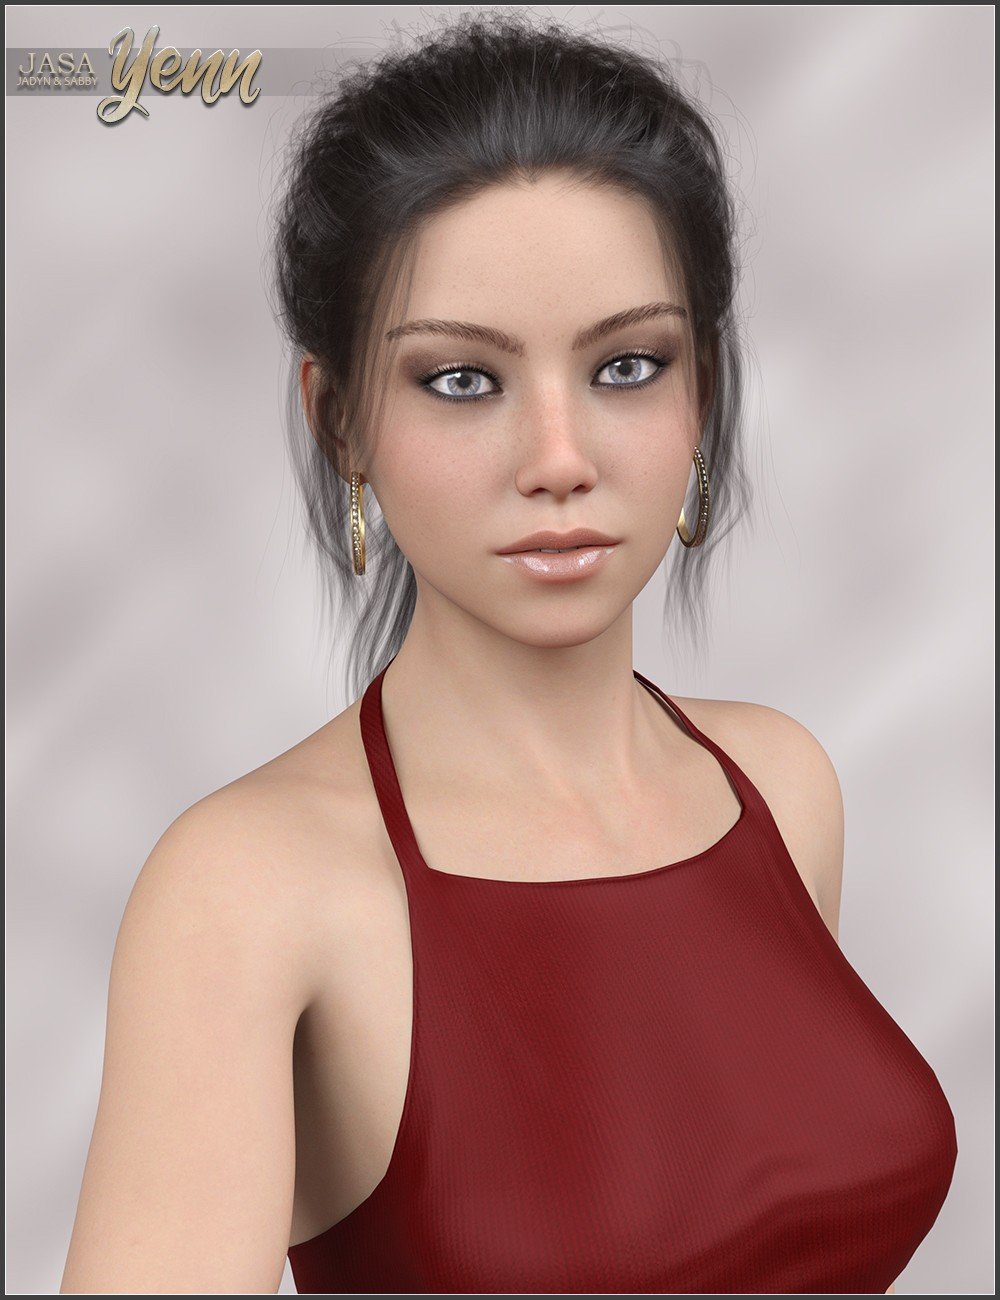 JASA Yenn for Genesis 8 and 8.1 Female by: SabbyJadyn, 3D Models by Daz 3D